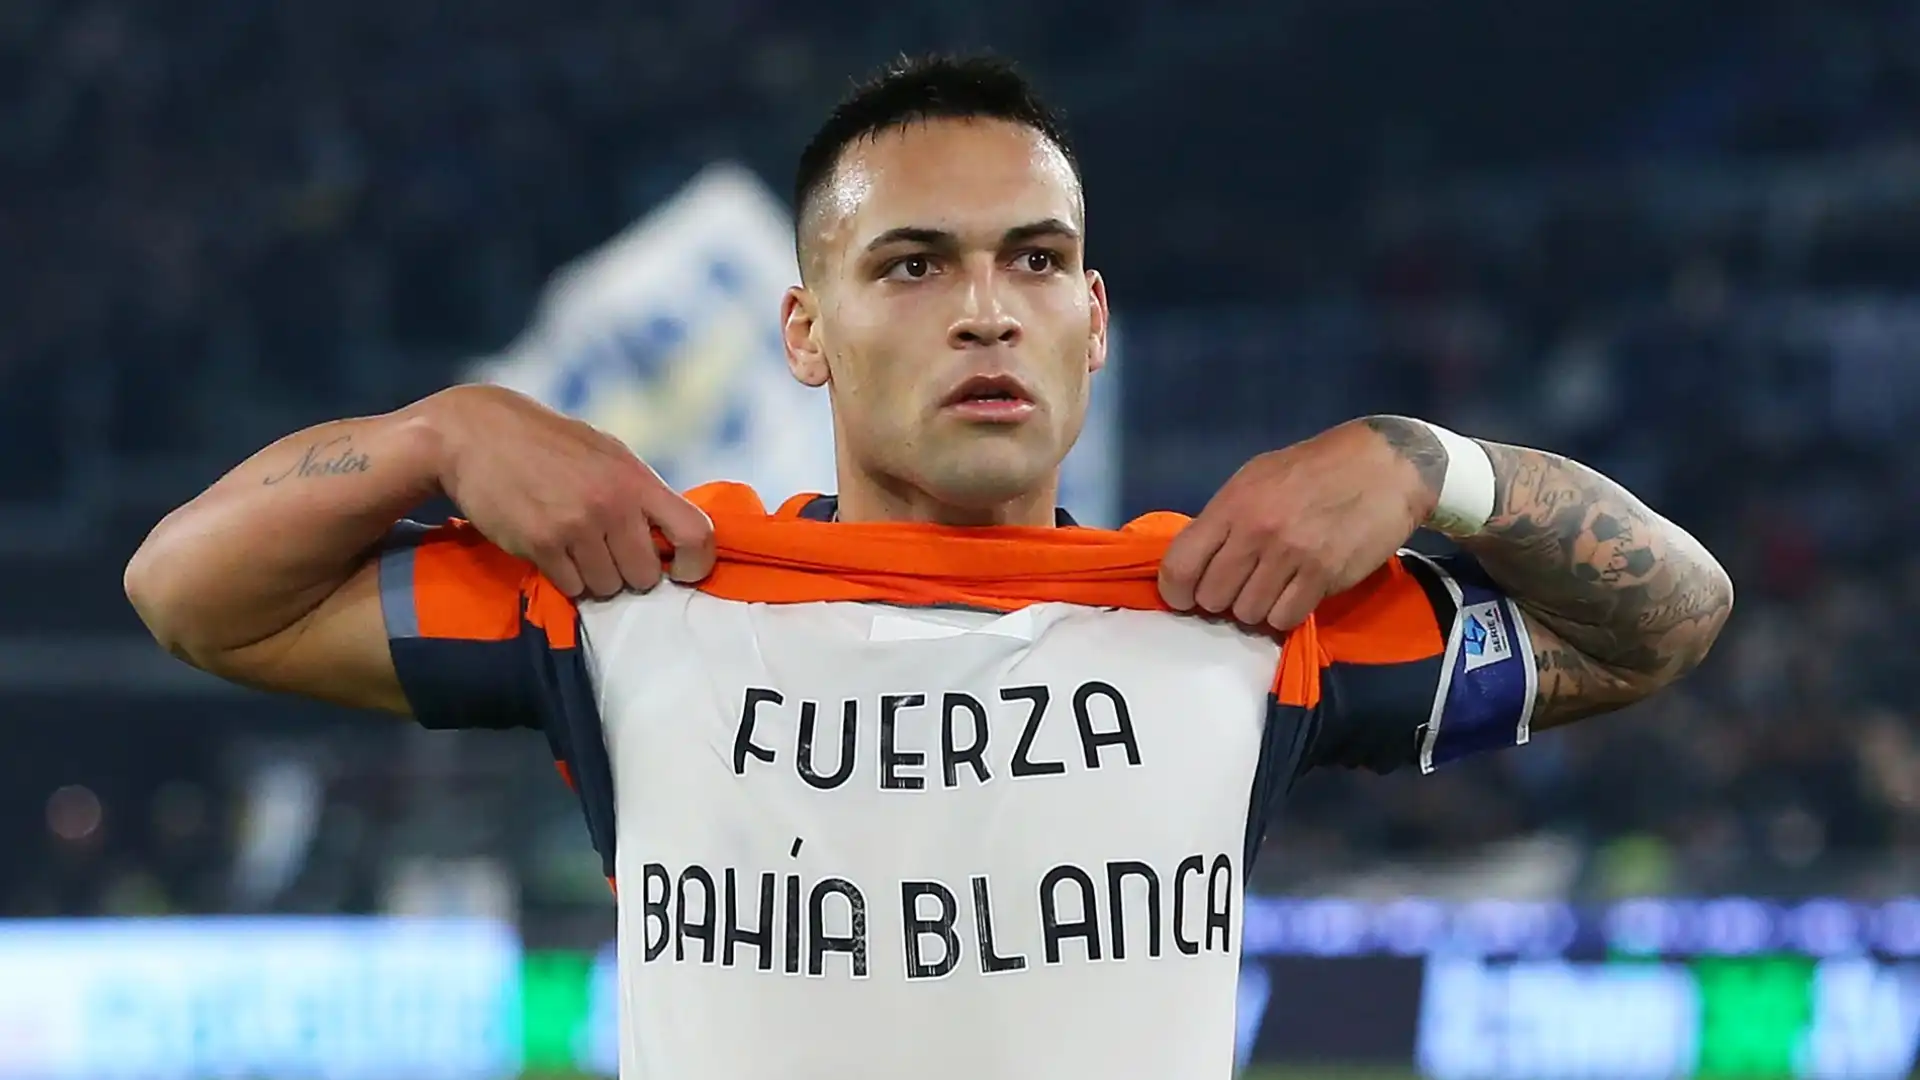 Durante l'esultanza il Toro ha mostrato la maglietta con la scritta "Fuerza Bahia Blanca"